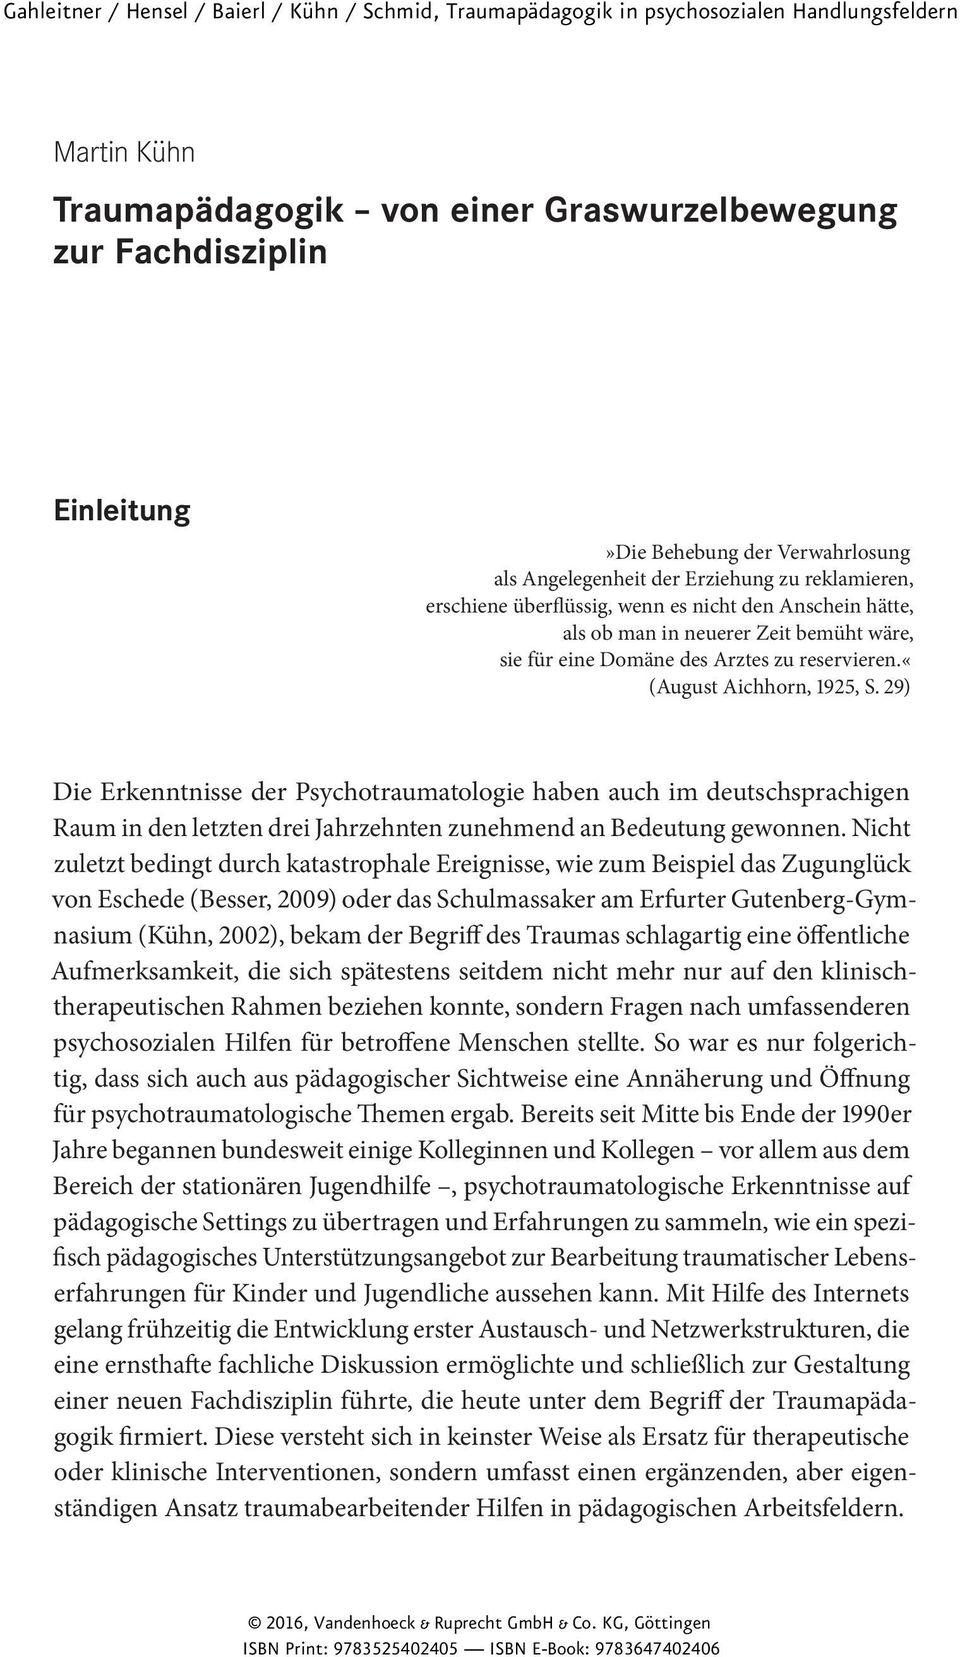 29) Die Erkenntnisse der Psychotraumatologie haben auch im deutschsprachigen Raum in den letzten drei Jahrzehnten zunehmend an Bedeutung gewonnen.